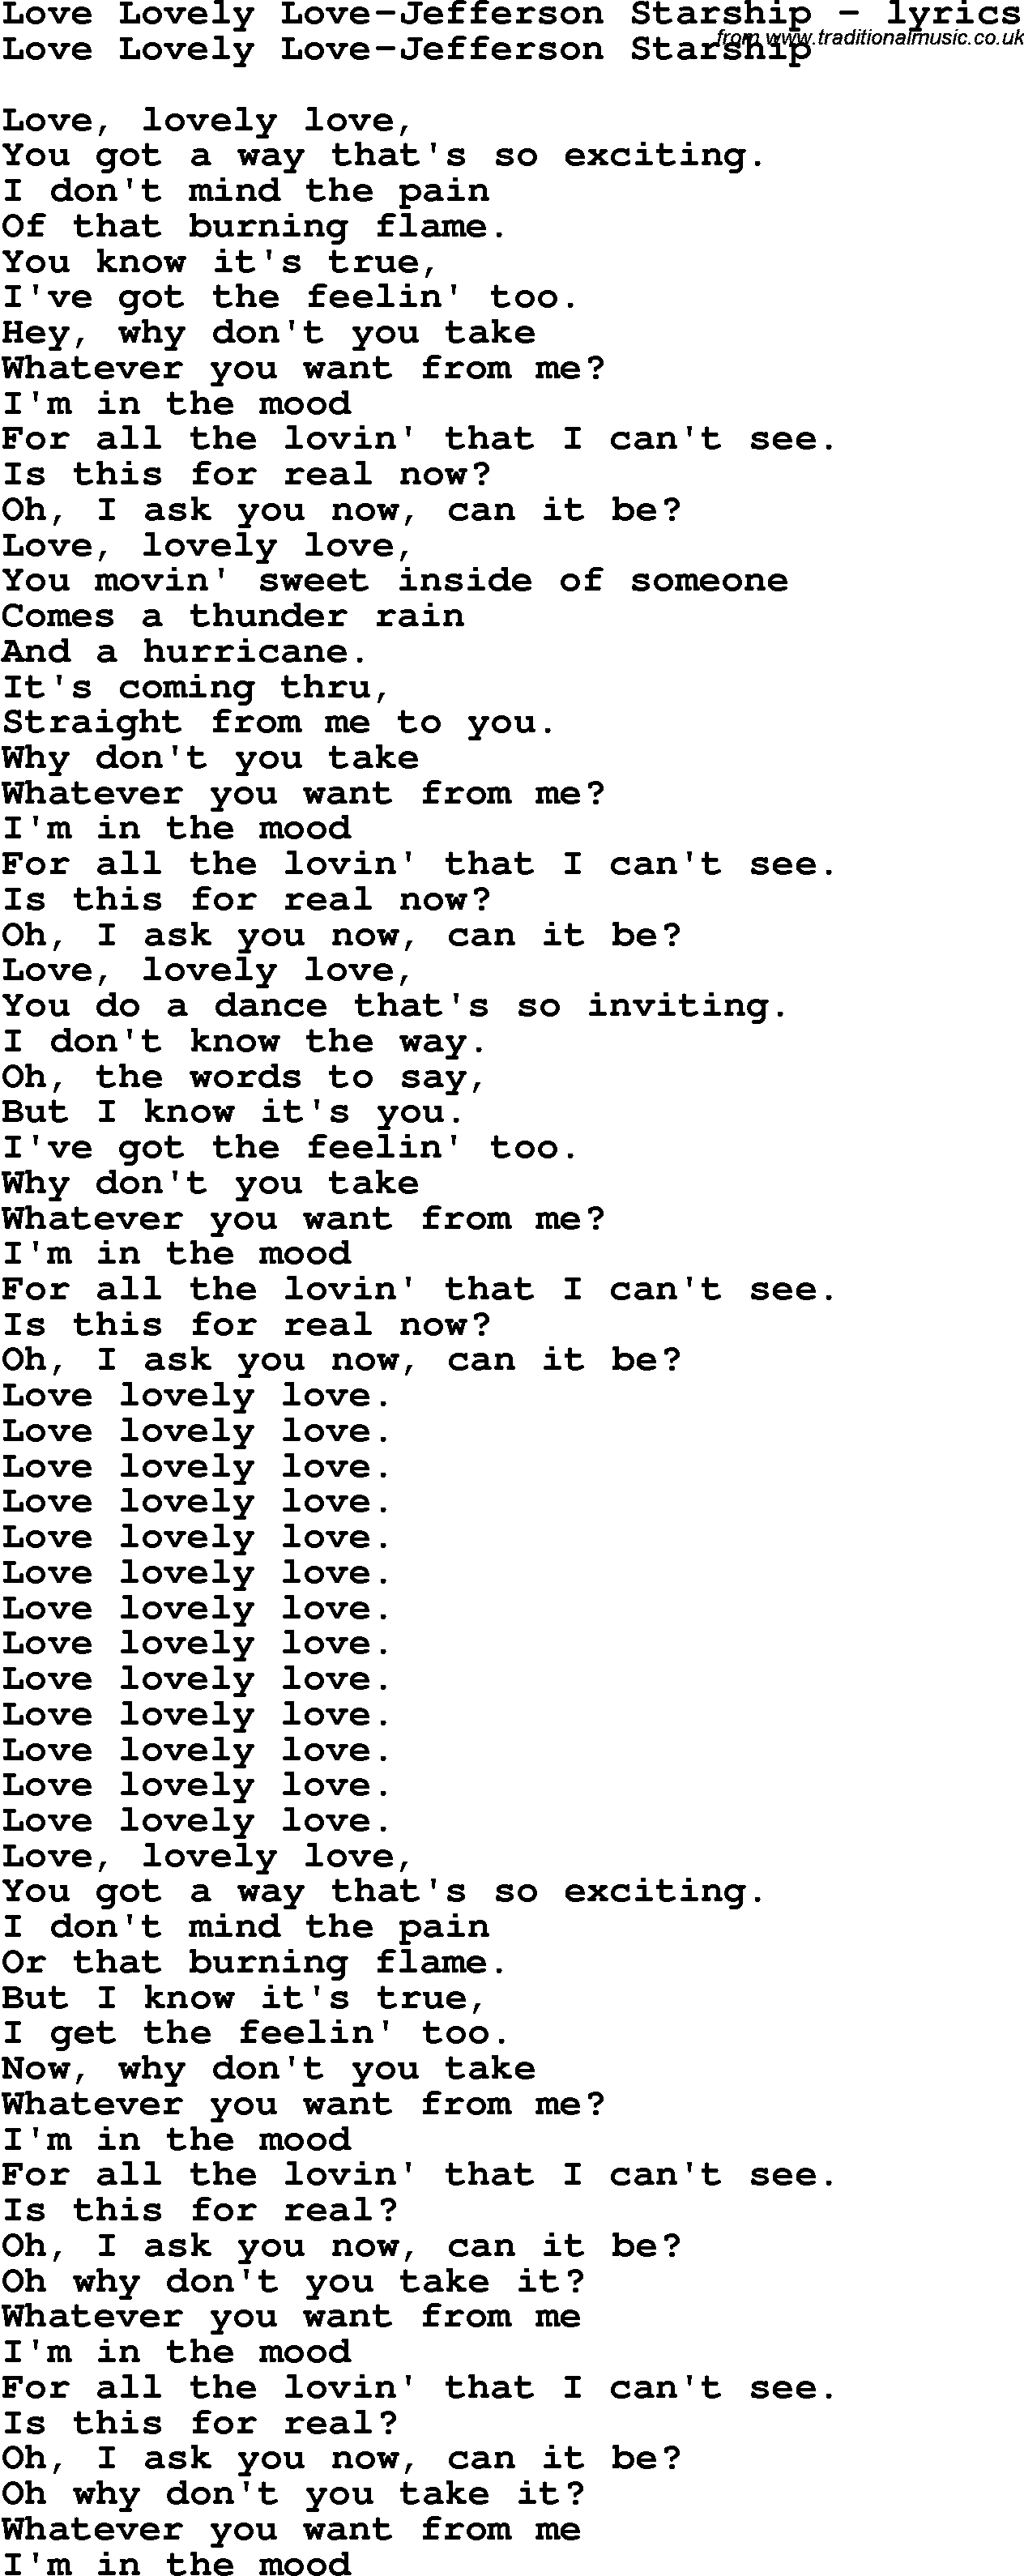 Love Song Lyrics for: Love Lovely Love-Jefferson Starship